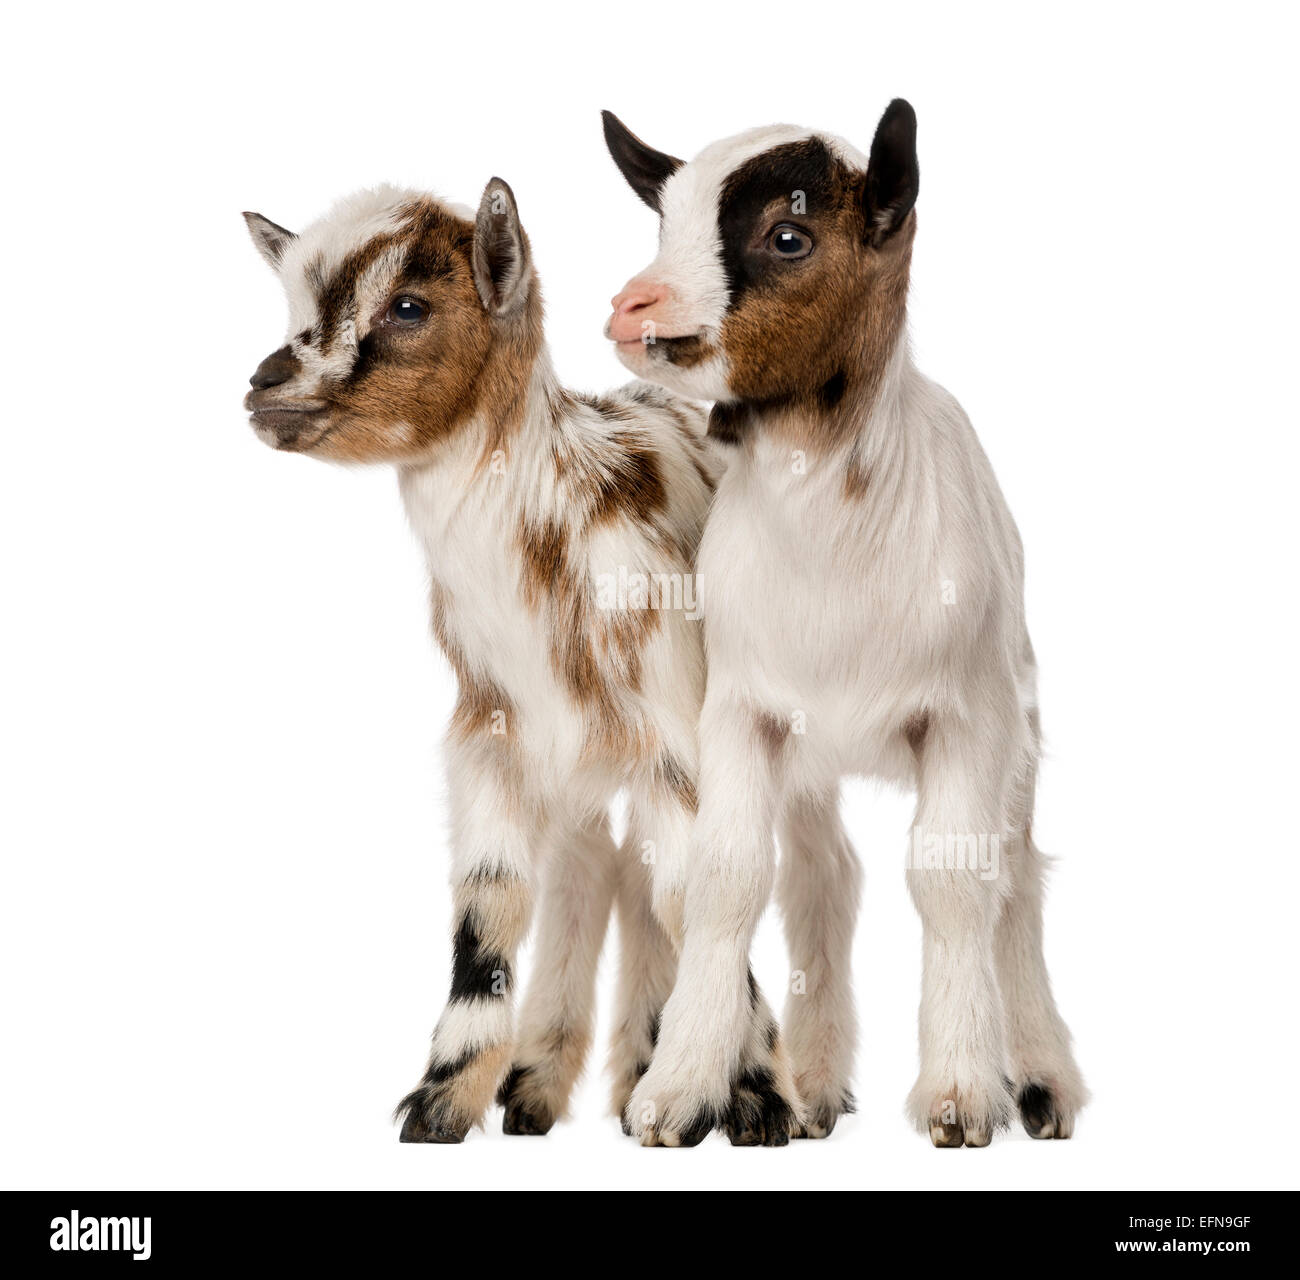 Deux jeunes chèvres domestiques, kids against white background Banque D'Images